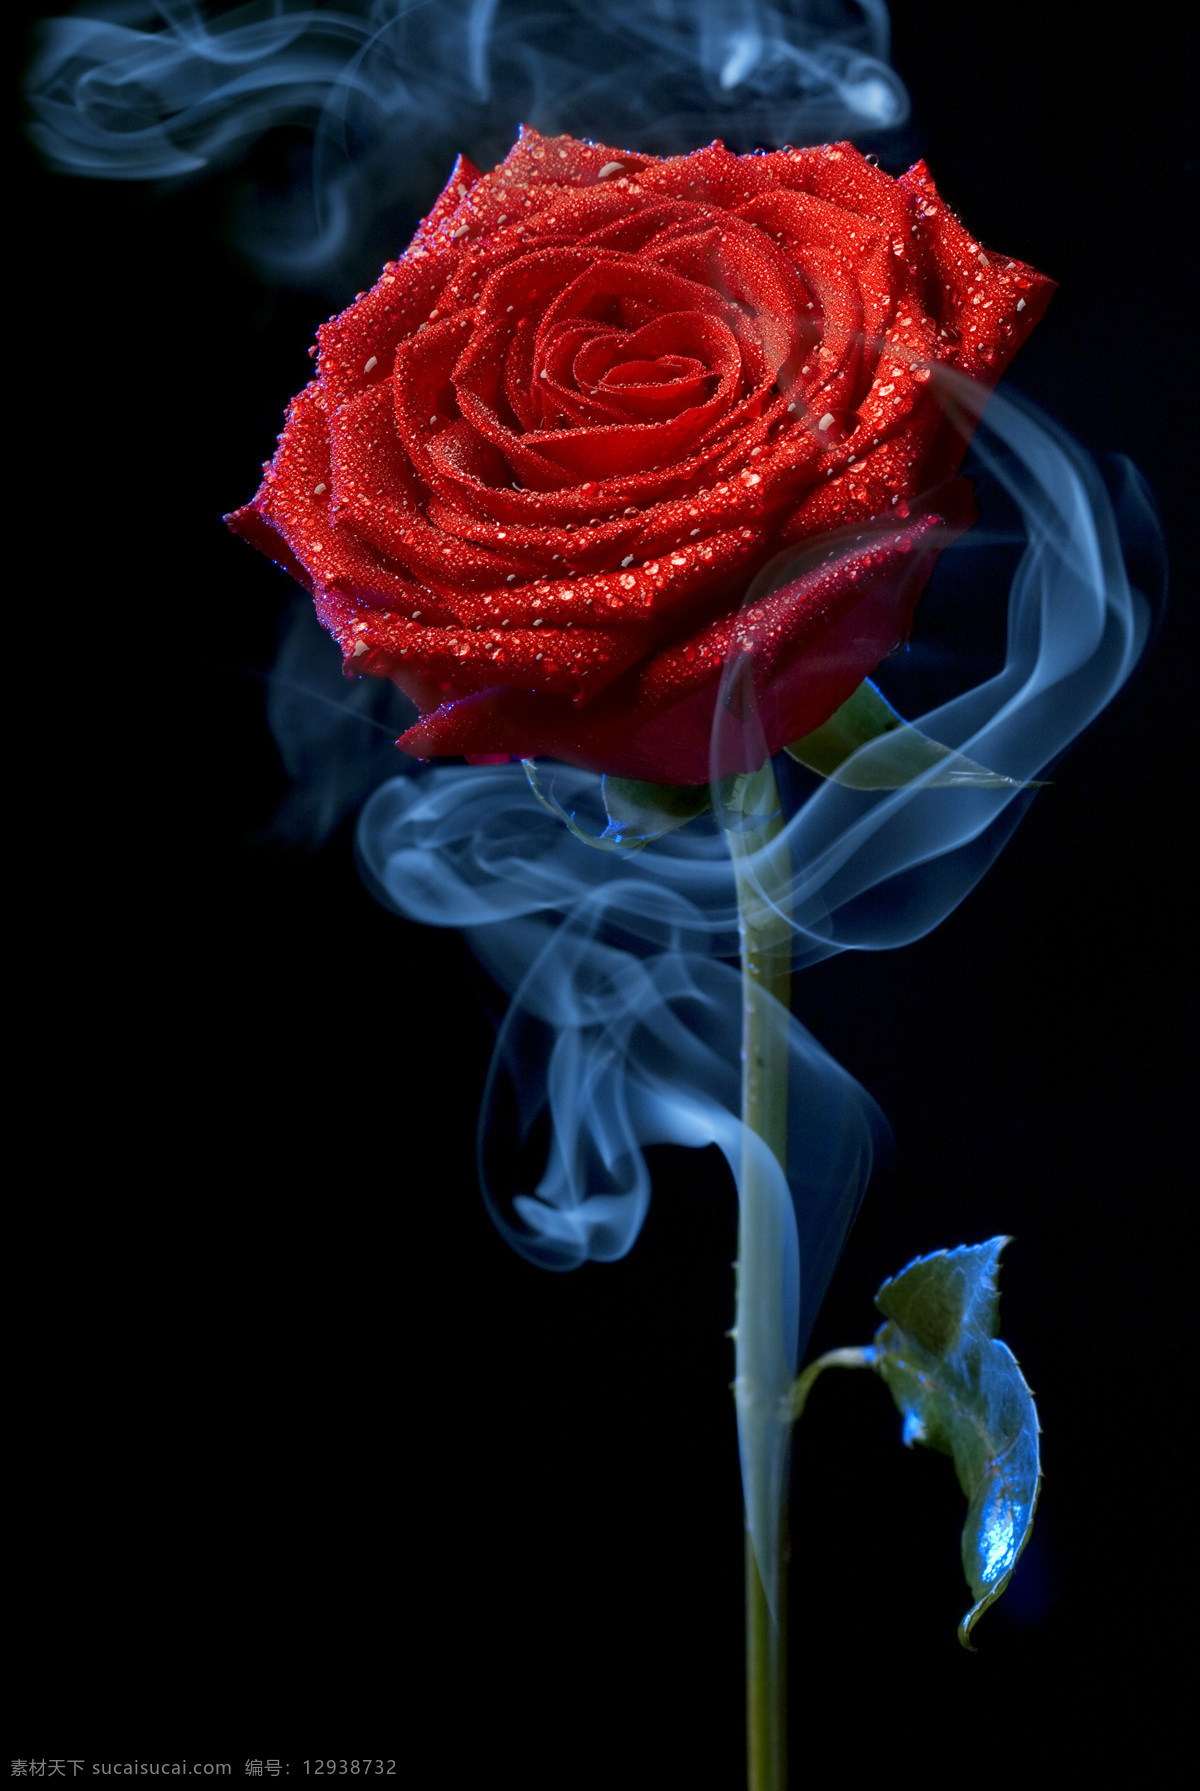 玫瑰花图片 玫瑰花 红玫瑰 玫瑰 高清玫瑰 花卉 红色玫瑰花 美丽 自然 爱 漂亮 情